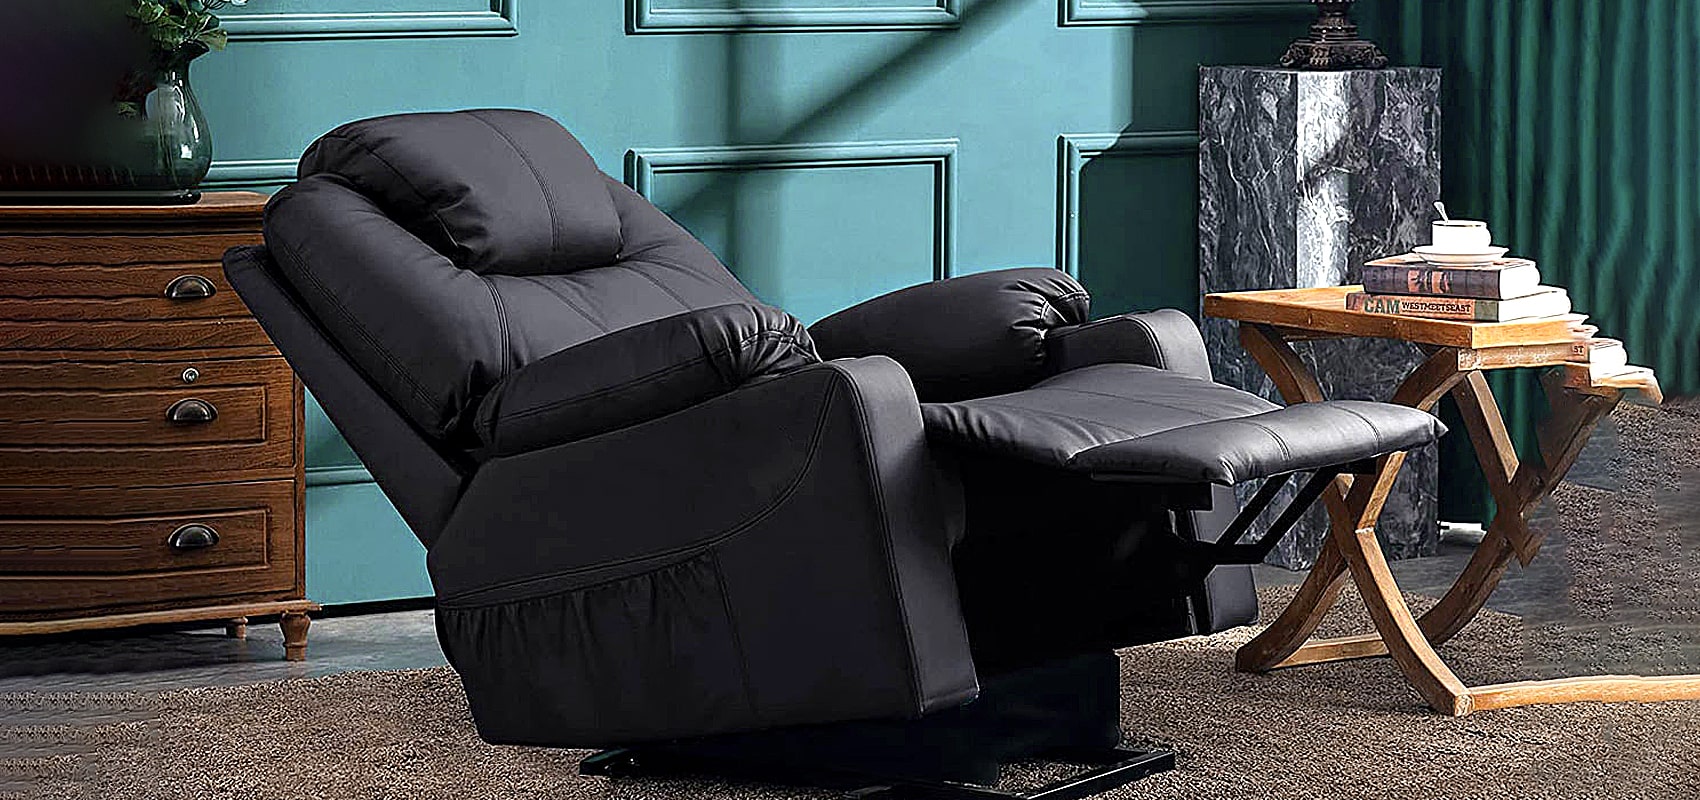 Black Sofa Recliner | Black Couch Recliner
